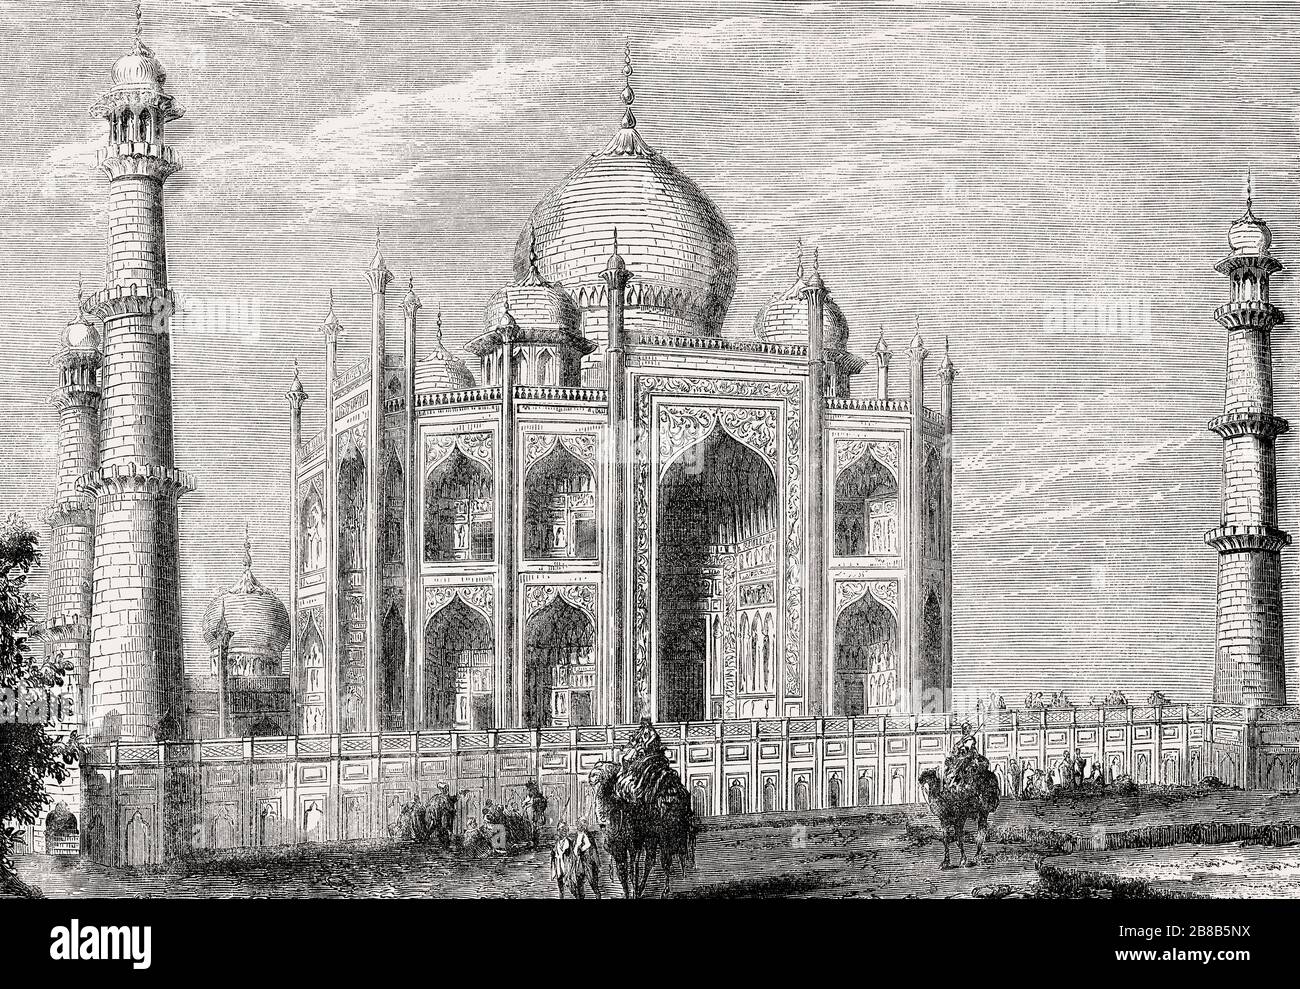 Le Taj Mahal, mausolée sur la rive sud de la rivière Yamuna, Agra, Inde Banque D'Images